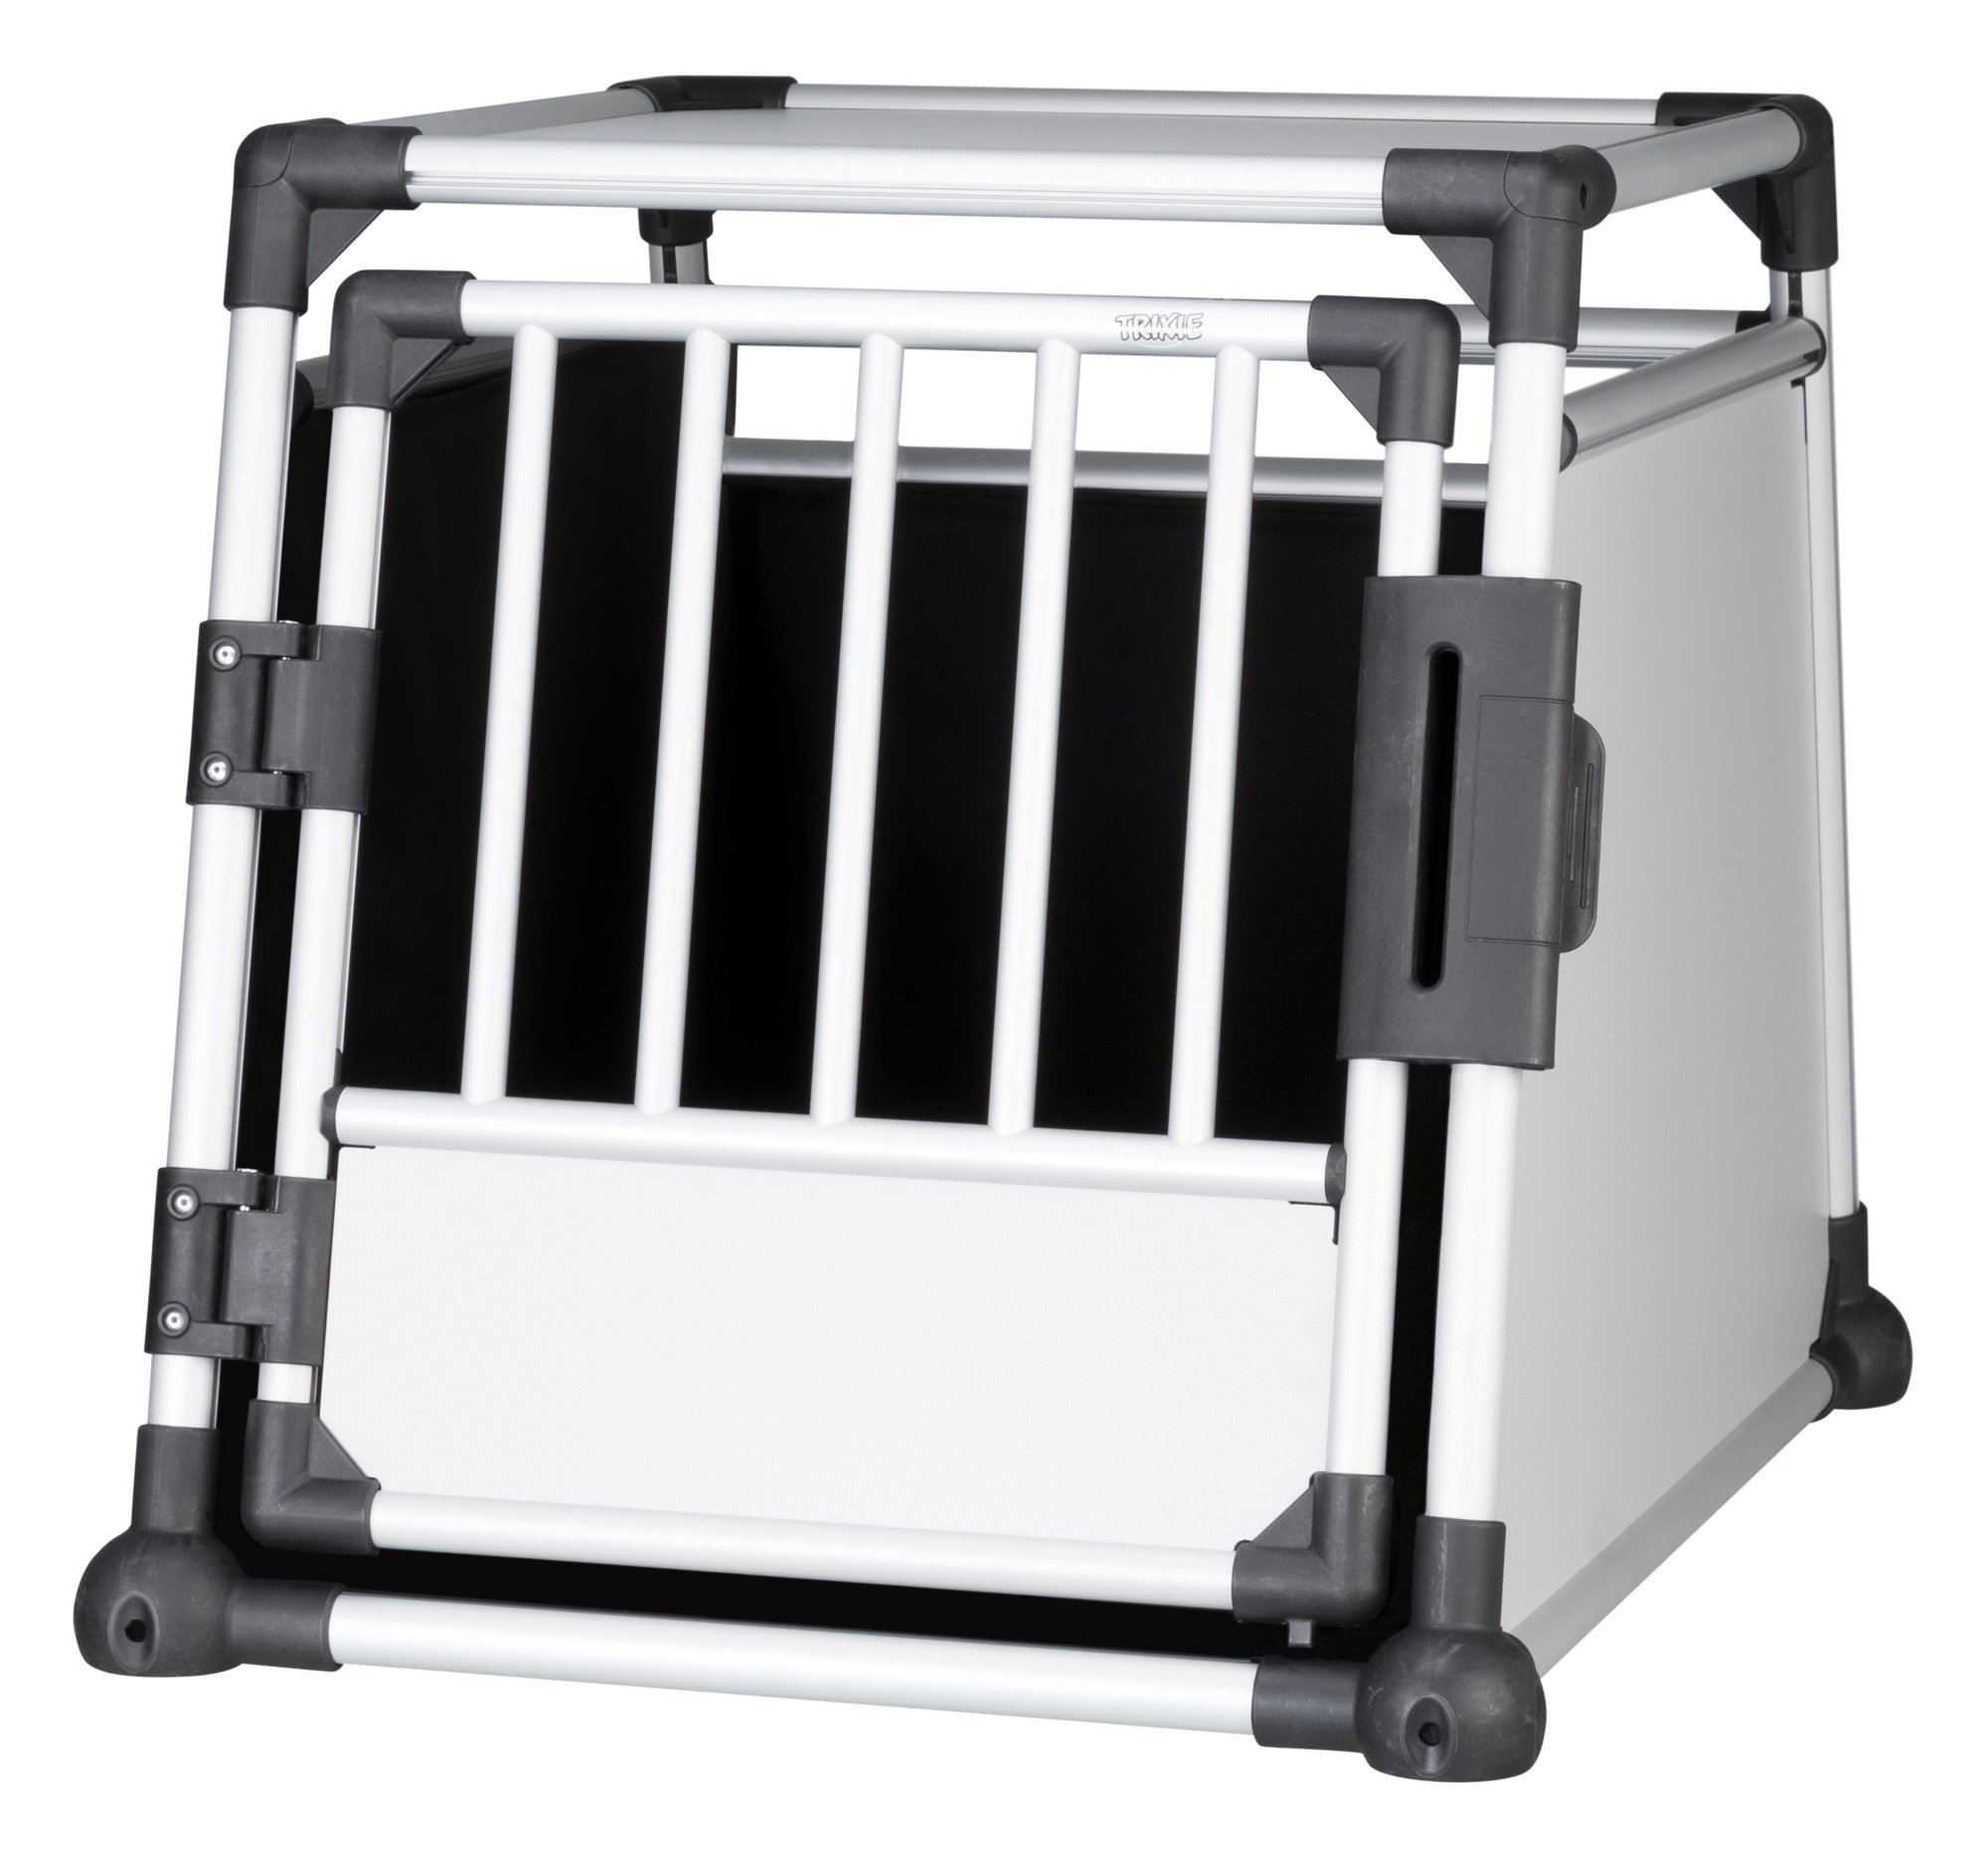 Cage de transport pour chien aluminium pour coffre de voiture 